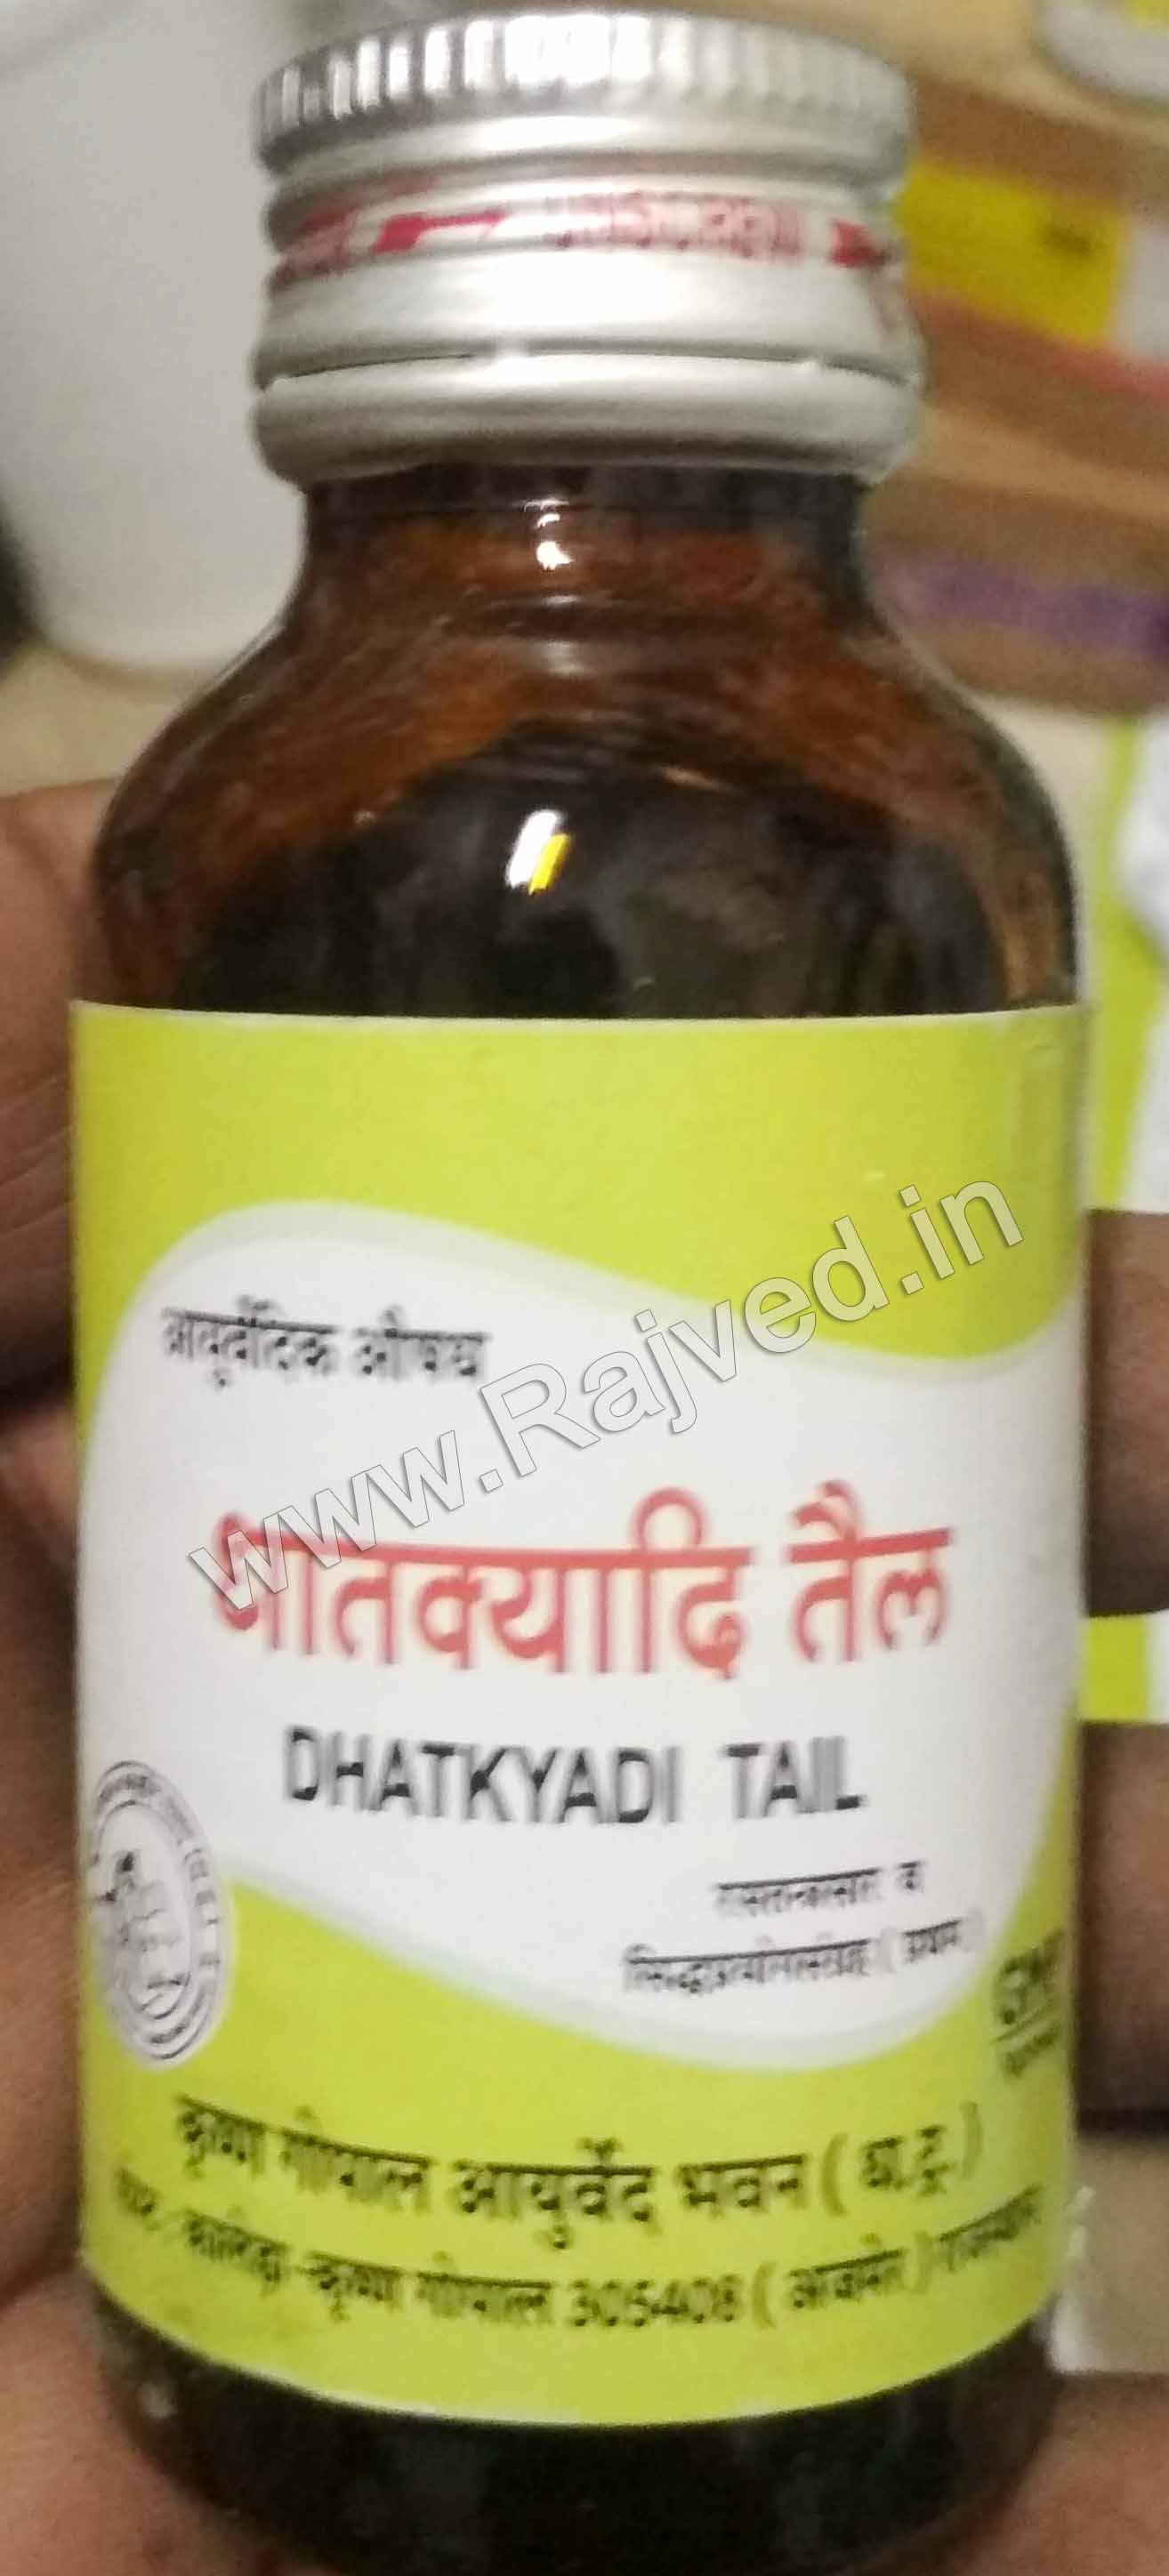 dhatkyadi tail 50ml krishna gopal ayurved bhavan